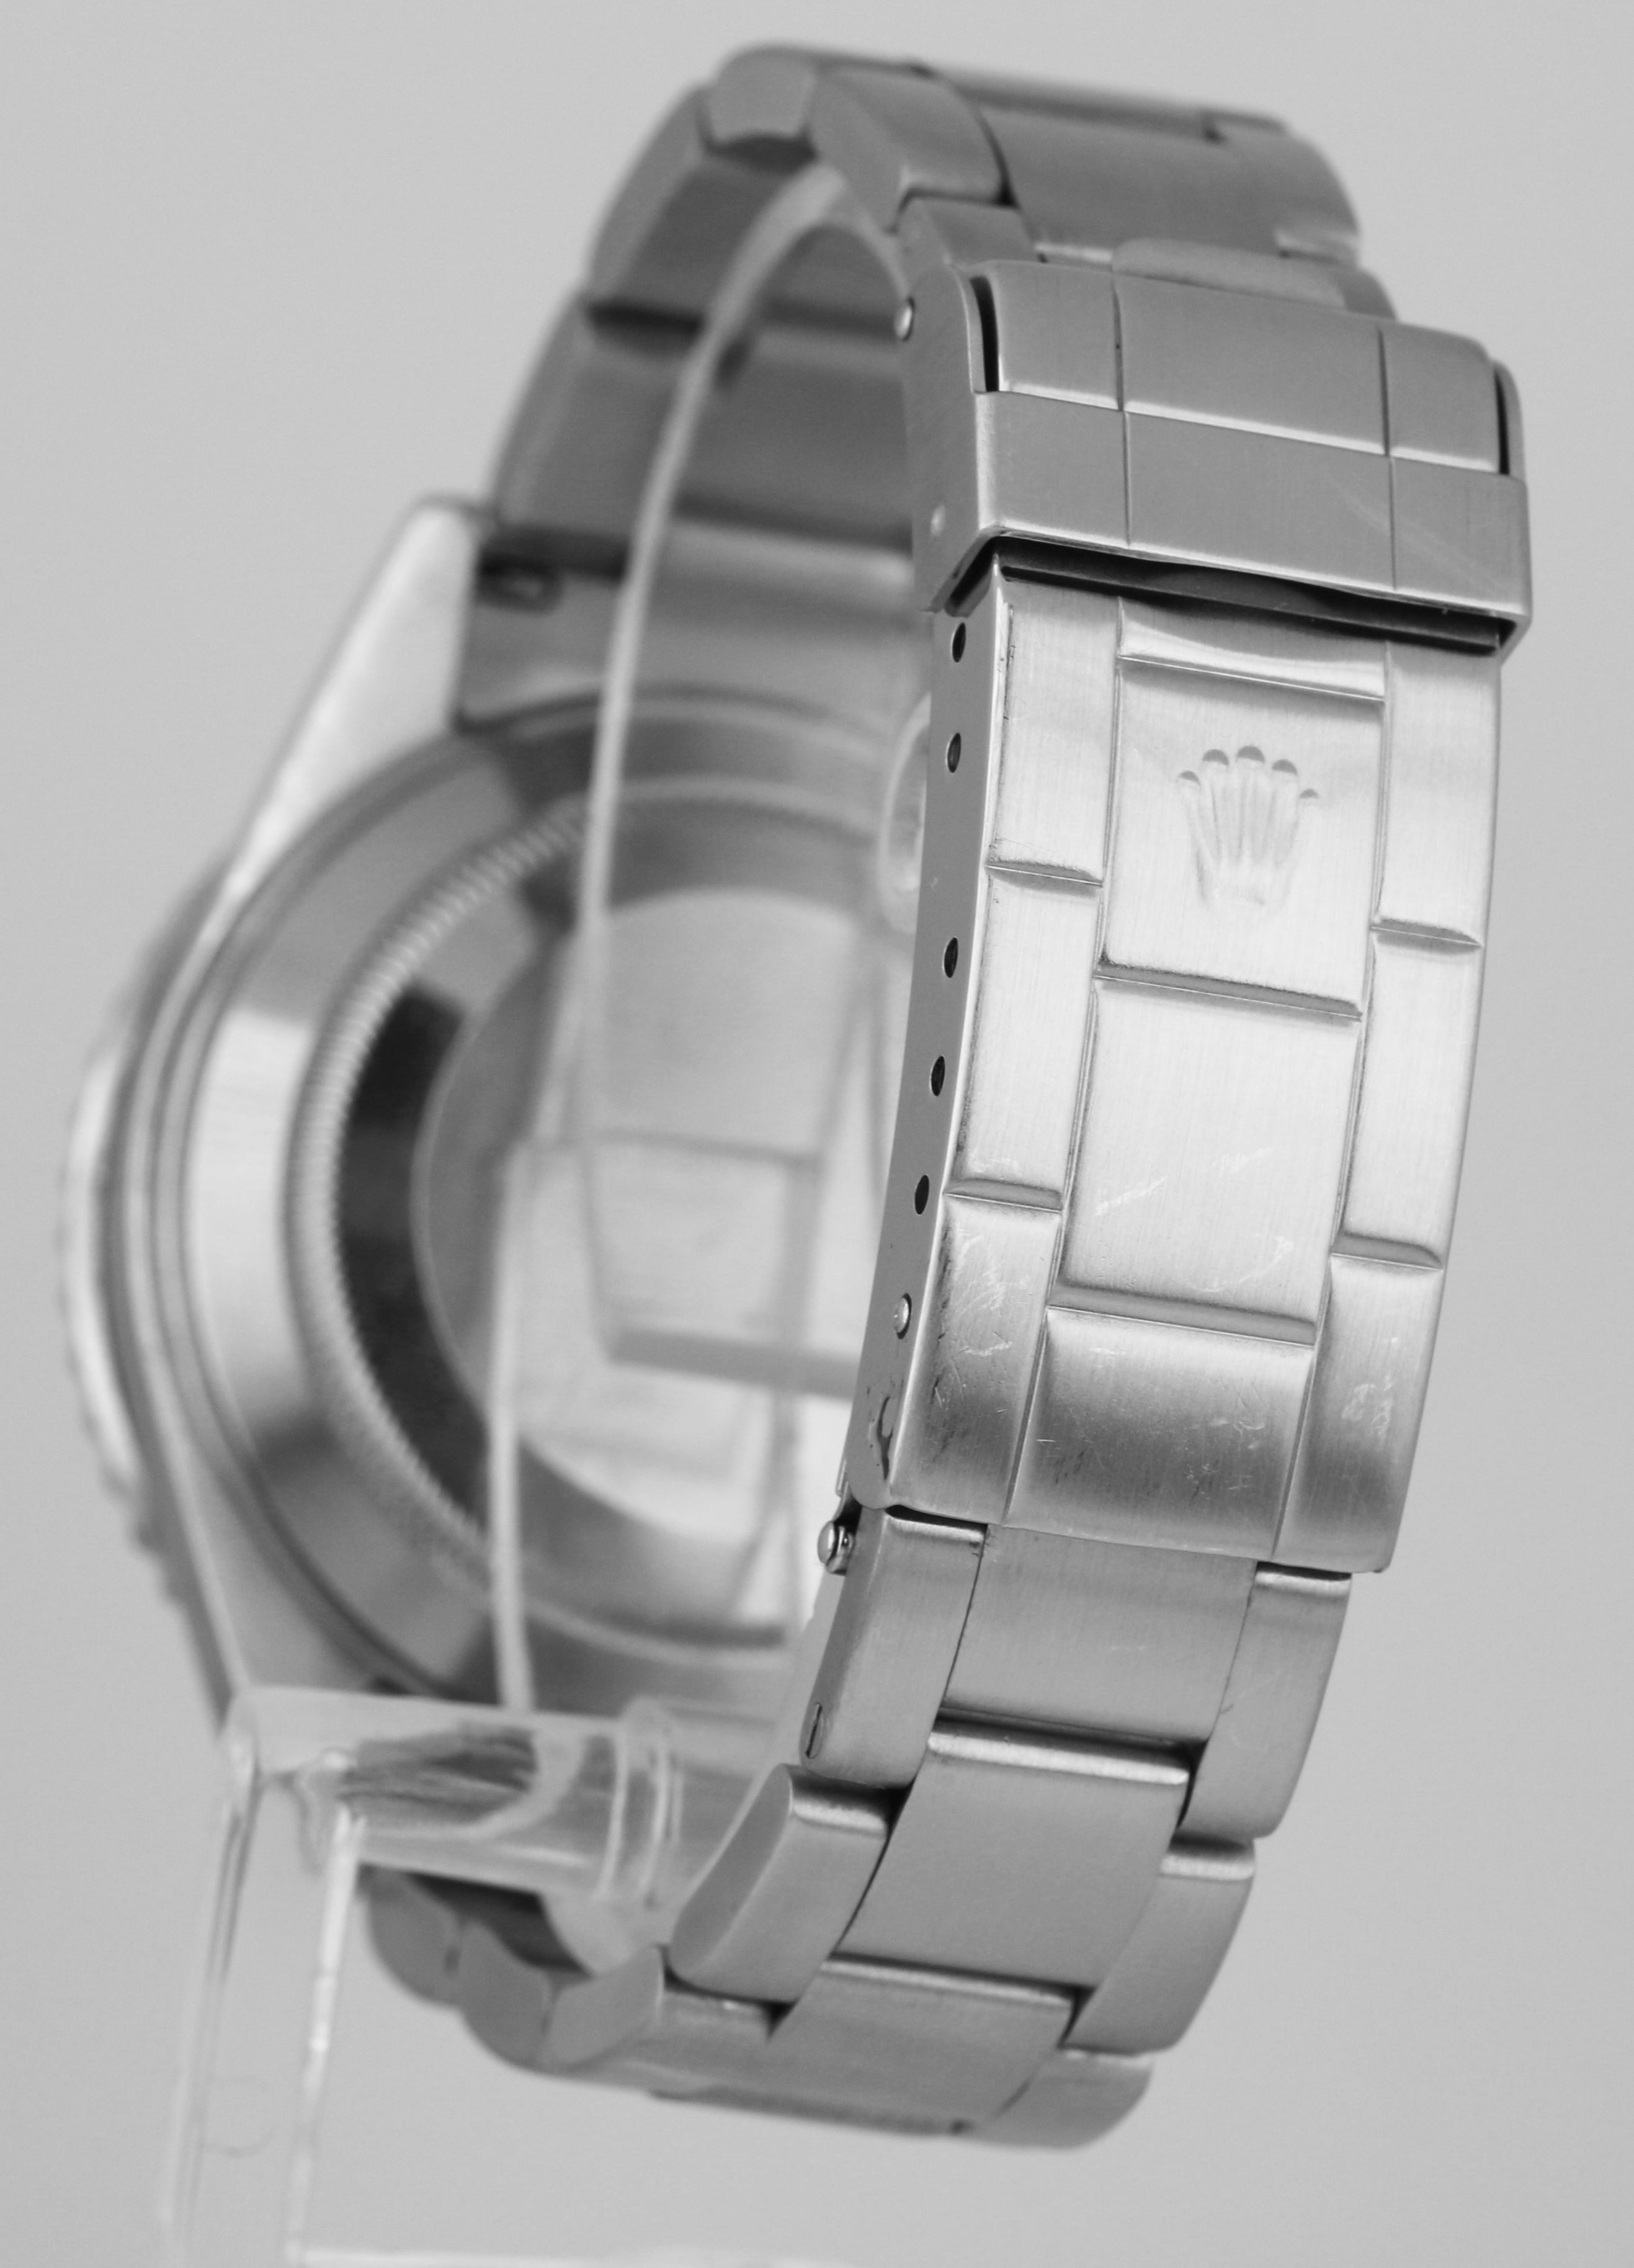 2005 Rolex Submariner Kermit Green 50th Anniversary Steel Watch 16610 LV B+P